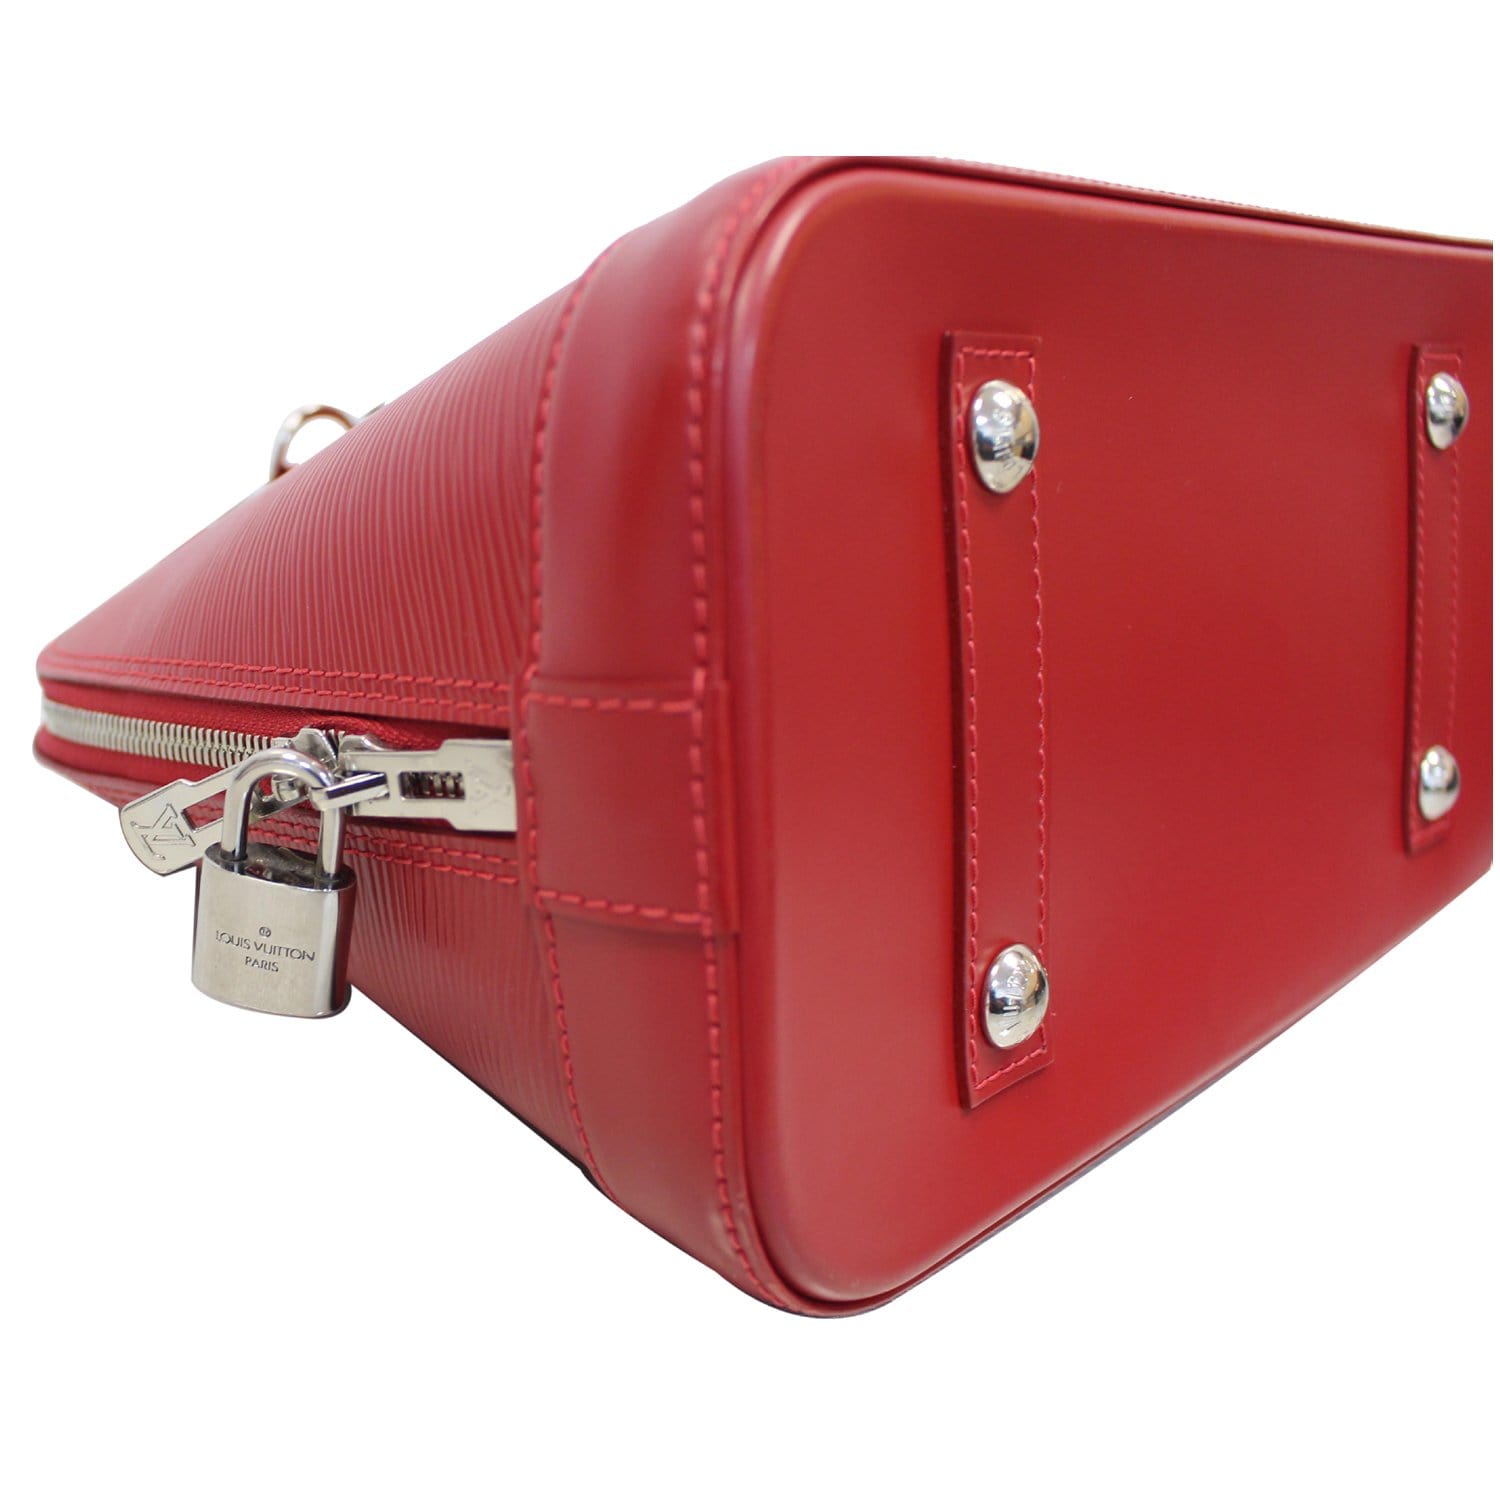 Alma PM Epi Leather - Handbags, LOUIS VUITTON ®